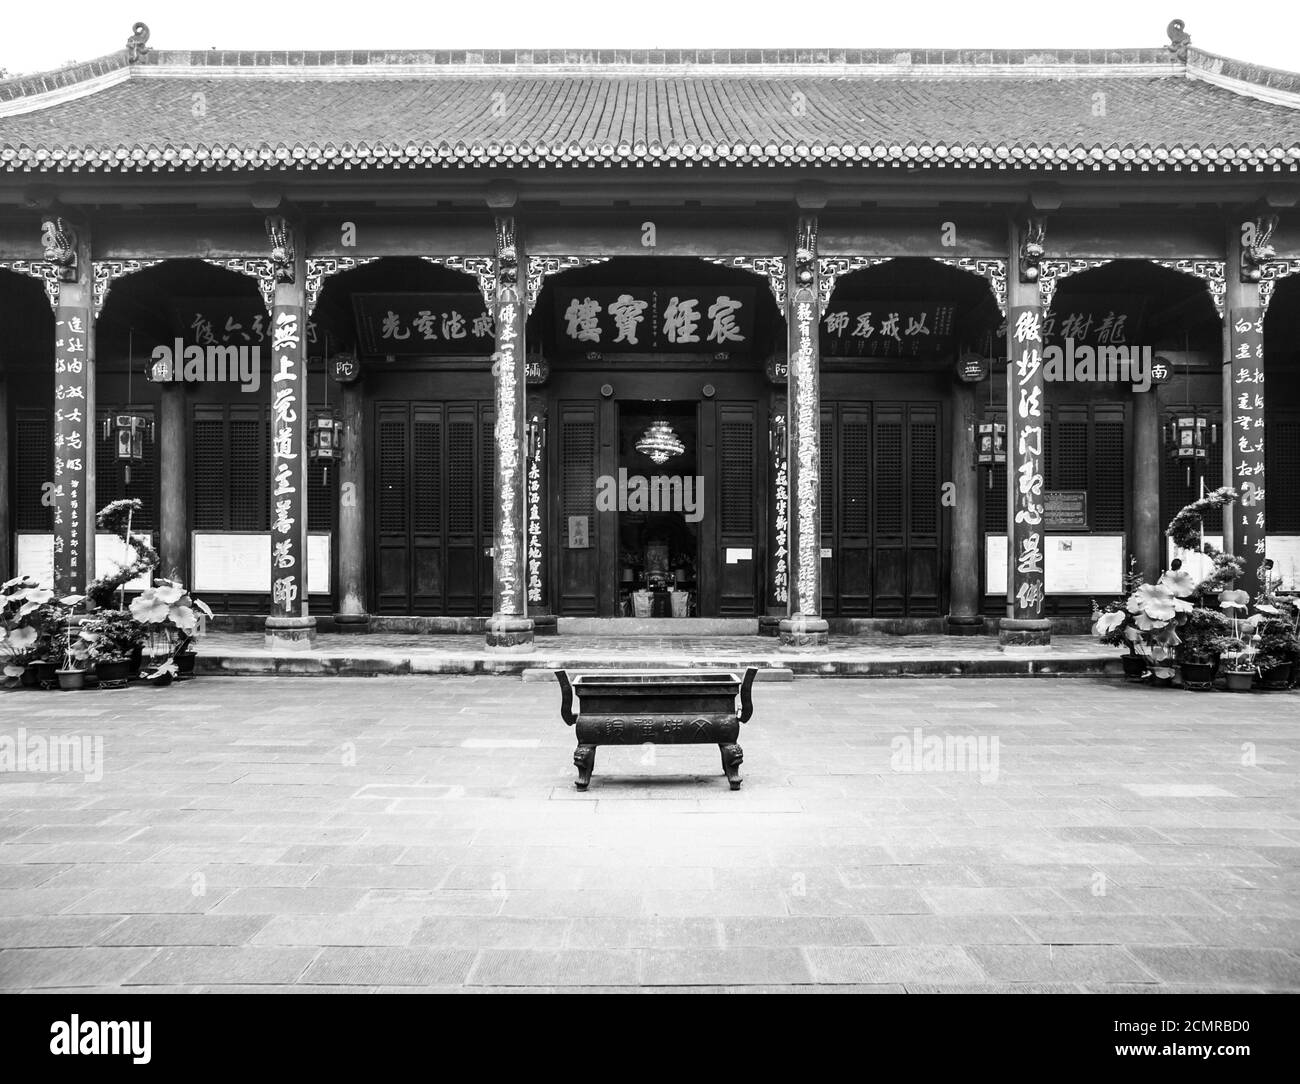 Cour dans le monastère bouddhiste de Wenshu, Manjushri, Chengdu dans la province du Sichuan, Chine, image en noir et blanc Banque D'Images